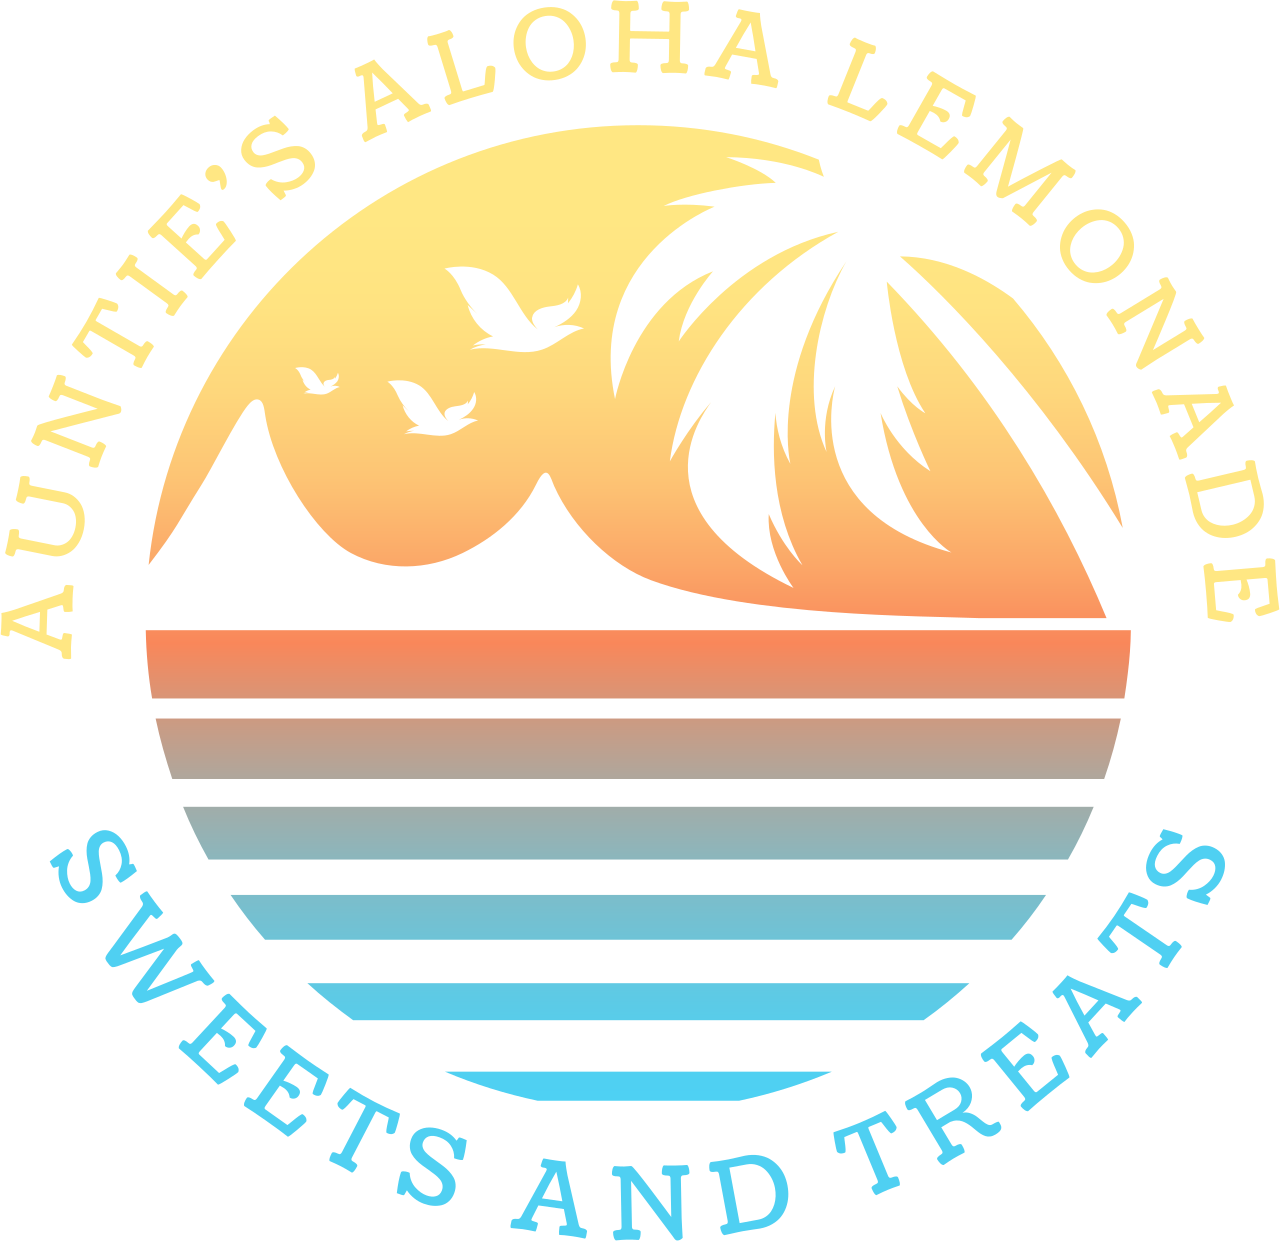 AUNTIE'S ALOHA LEMONADE 's logo